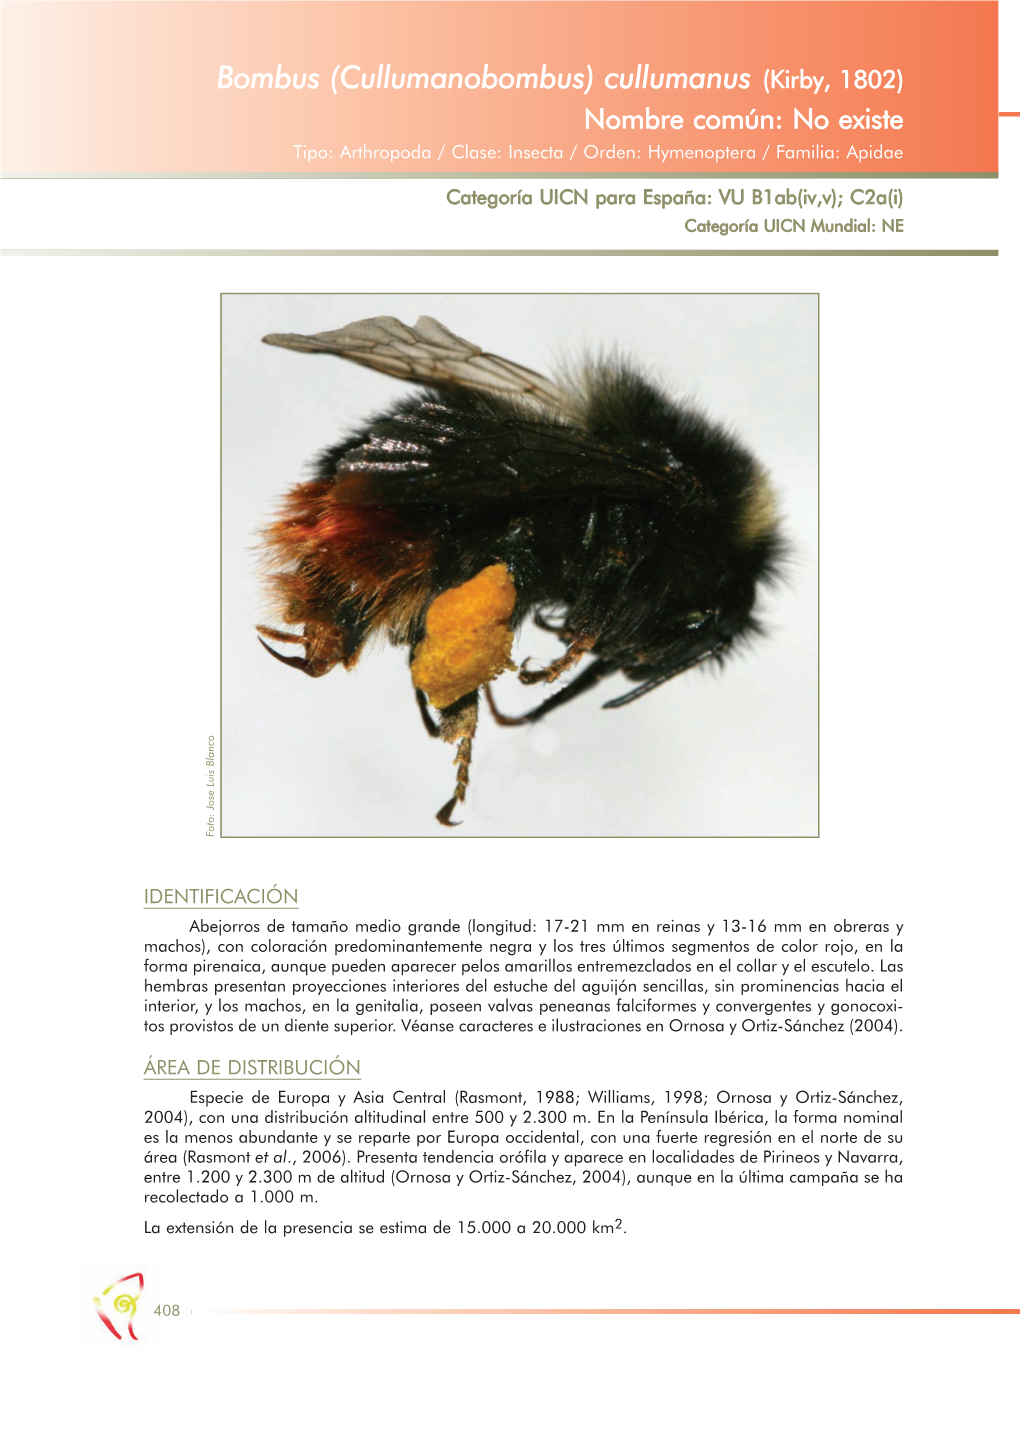 Bombus (Cullumanobombus) Cullumanus (Kirby, 1802) Nombre Común: No Existe Tipo: Arthropoda / Clase: Insecta / Orden: Hymenoptera / Familia: Apidae